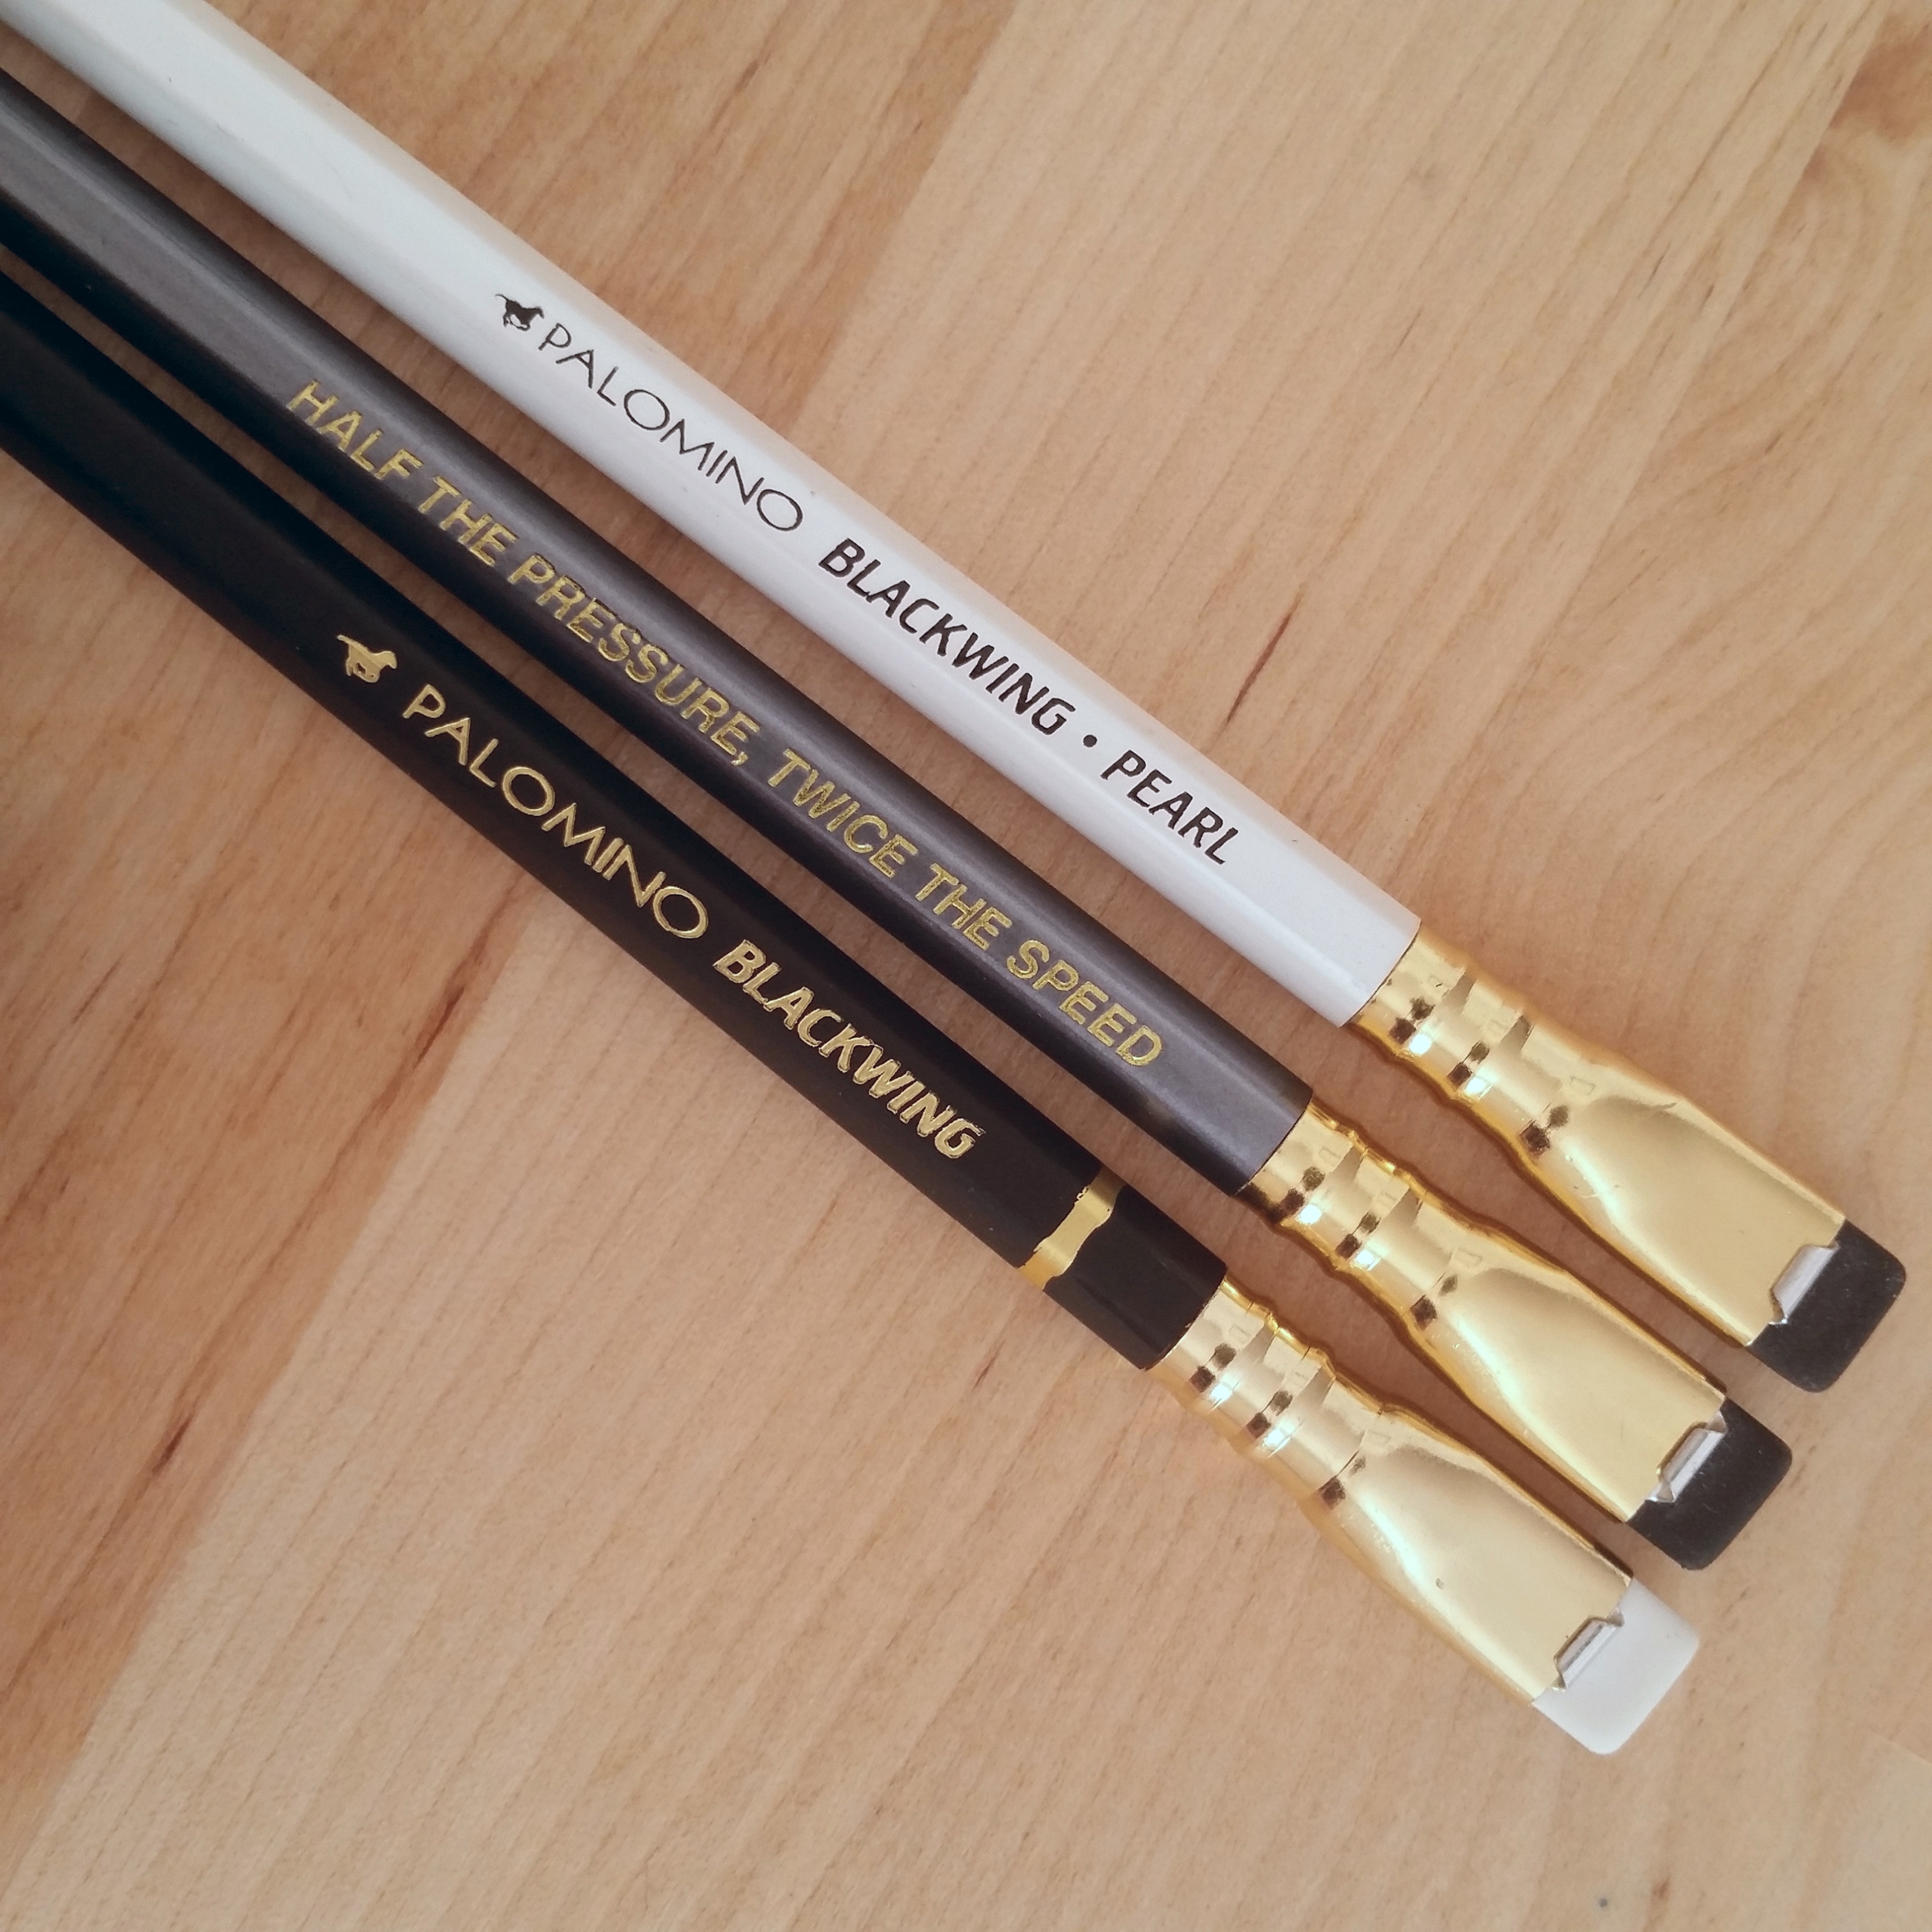 Review – Palomino Blackwing Pencil